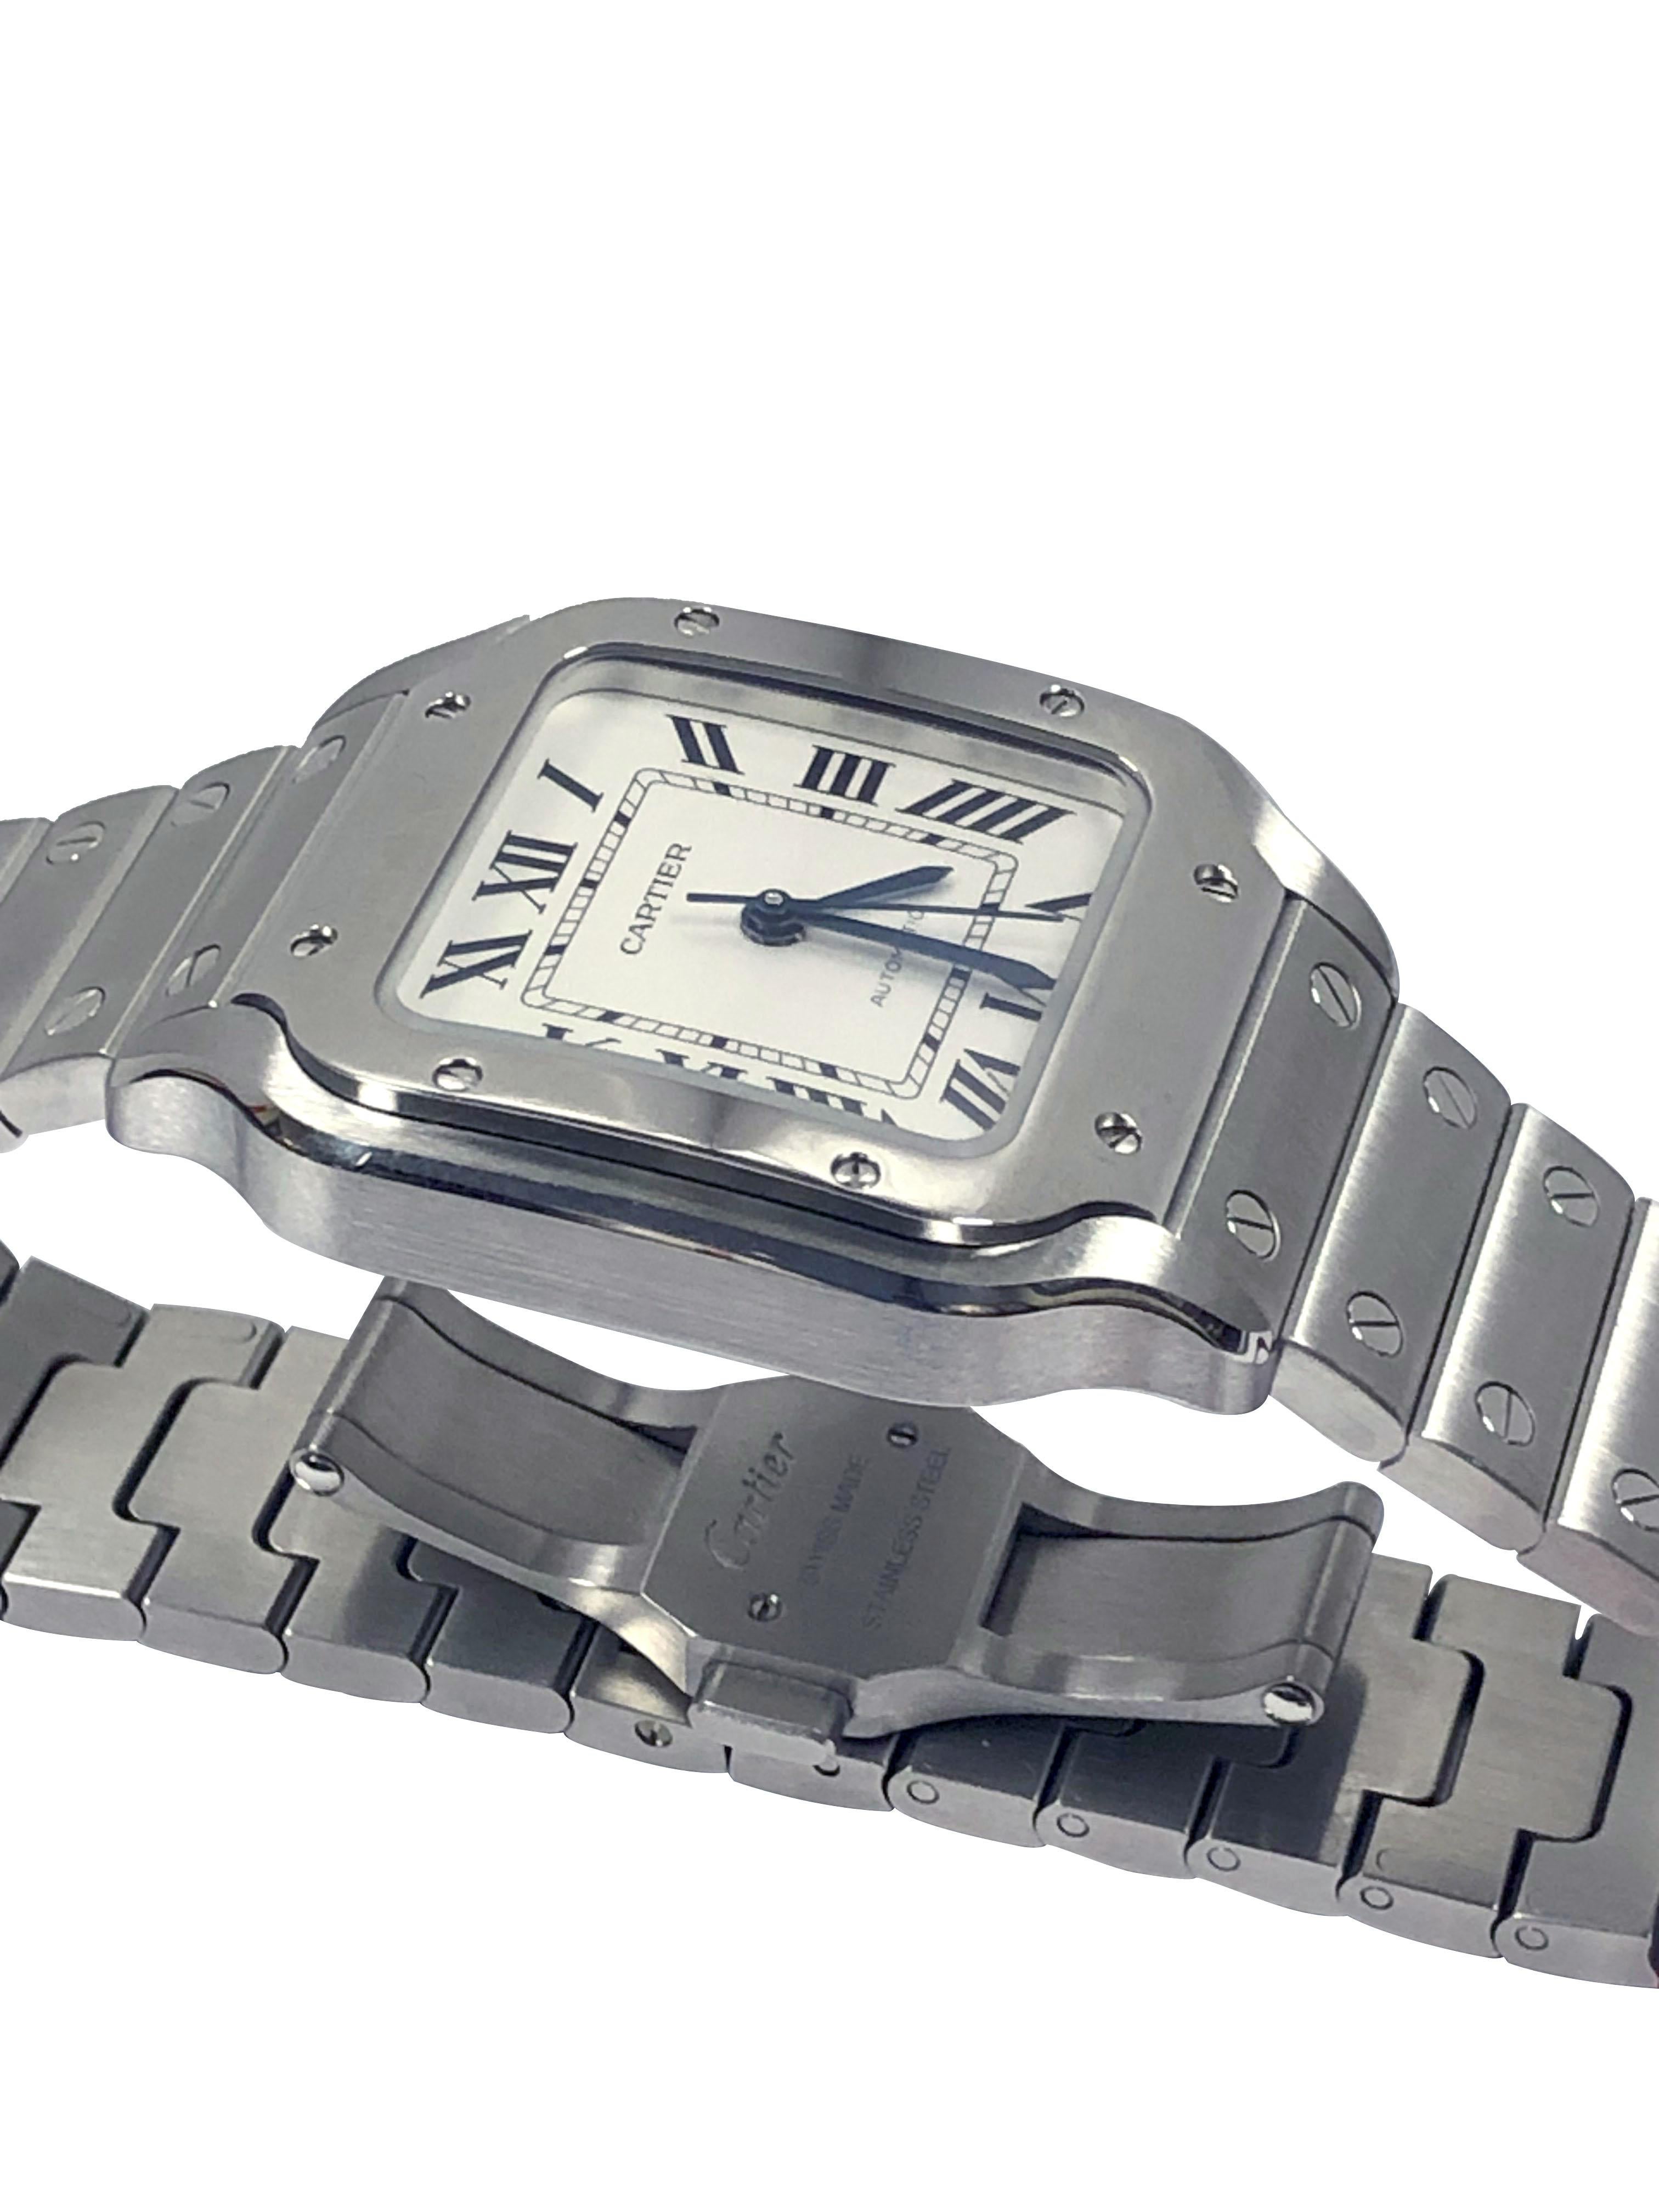 Circa 2021 Cartier Santos Armbanduhr, 32  X 34 M.M. Wasserdichtes Gehäuse aus Edelstahl mit 3 Teilen. Automatisches, selbstaufziehendes Uhrwerk, silbernes, satiniertes Zifferblatt mit schwarzen römischen Ziffern, Sekundenzeiger und einer Krone aus